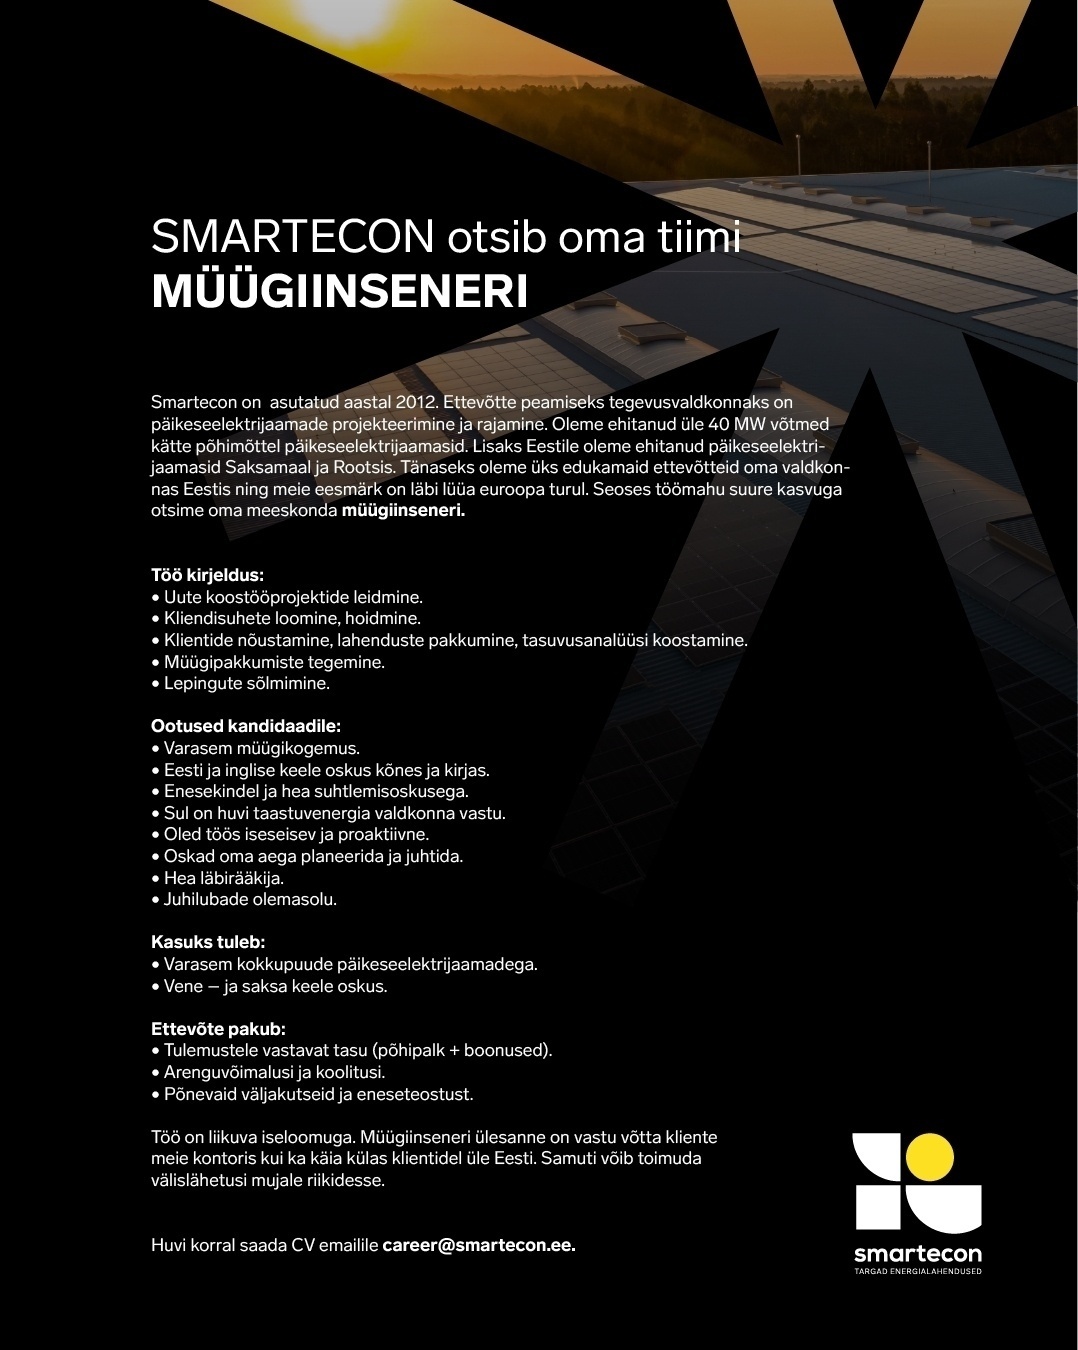 Smartecon OÜ Müügiinsener